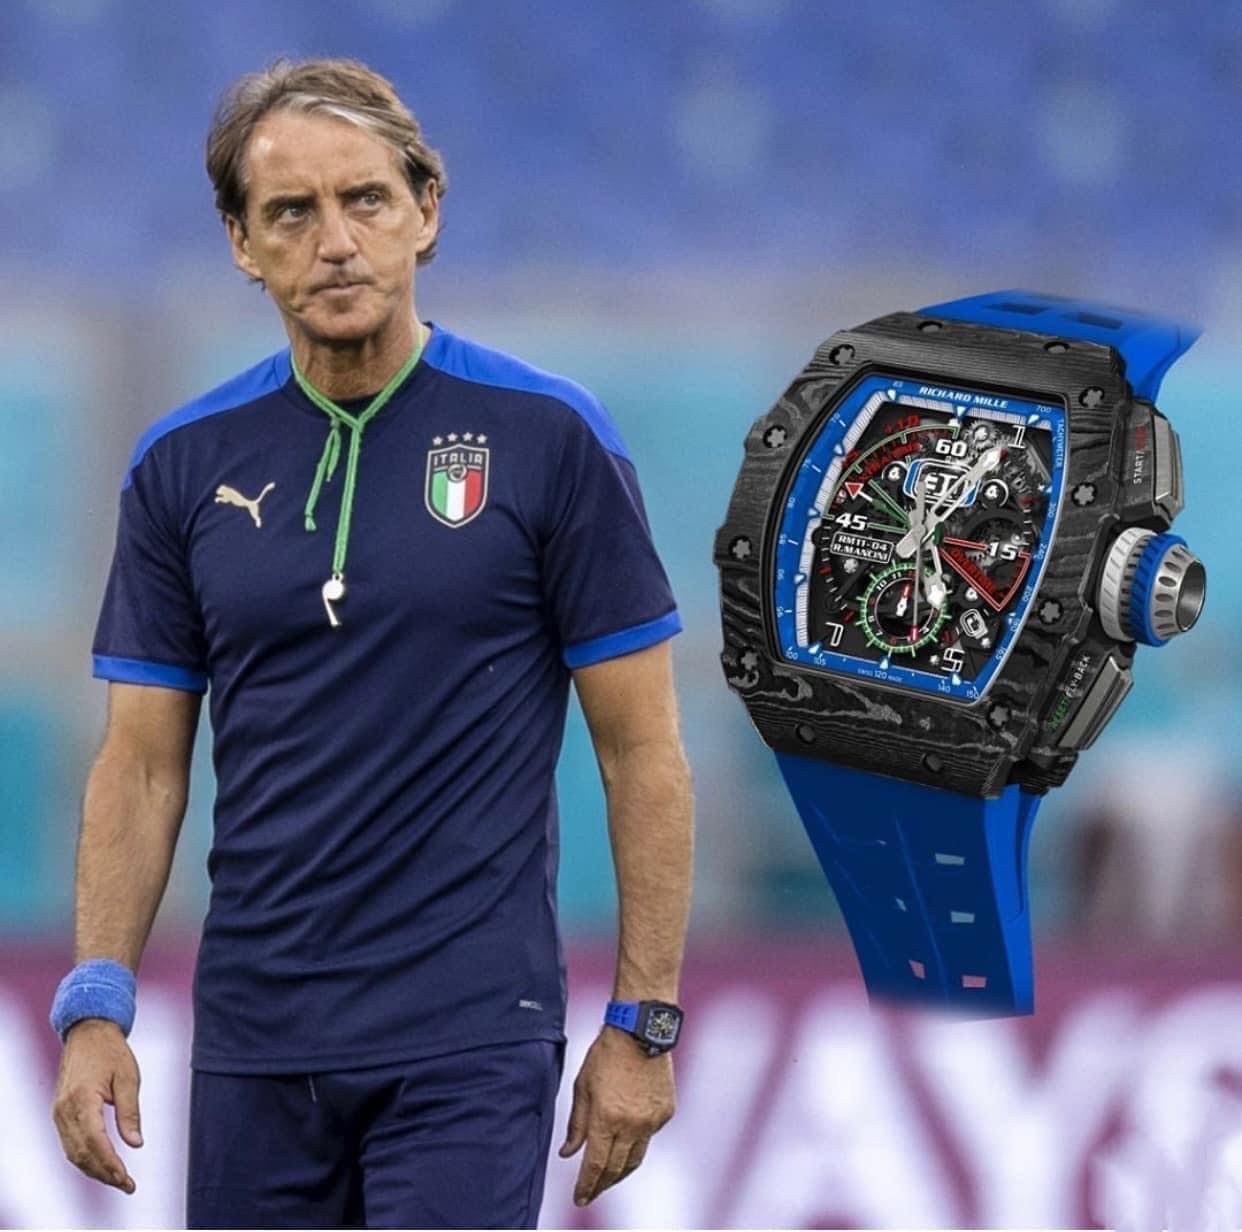 Richard Mille chế tác những mẫu đồng hồ mang tên Roberto Mancini để tôn vinh ông